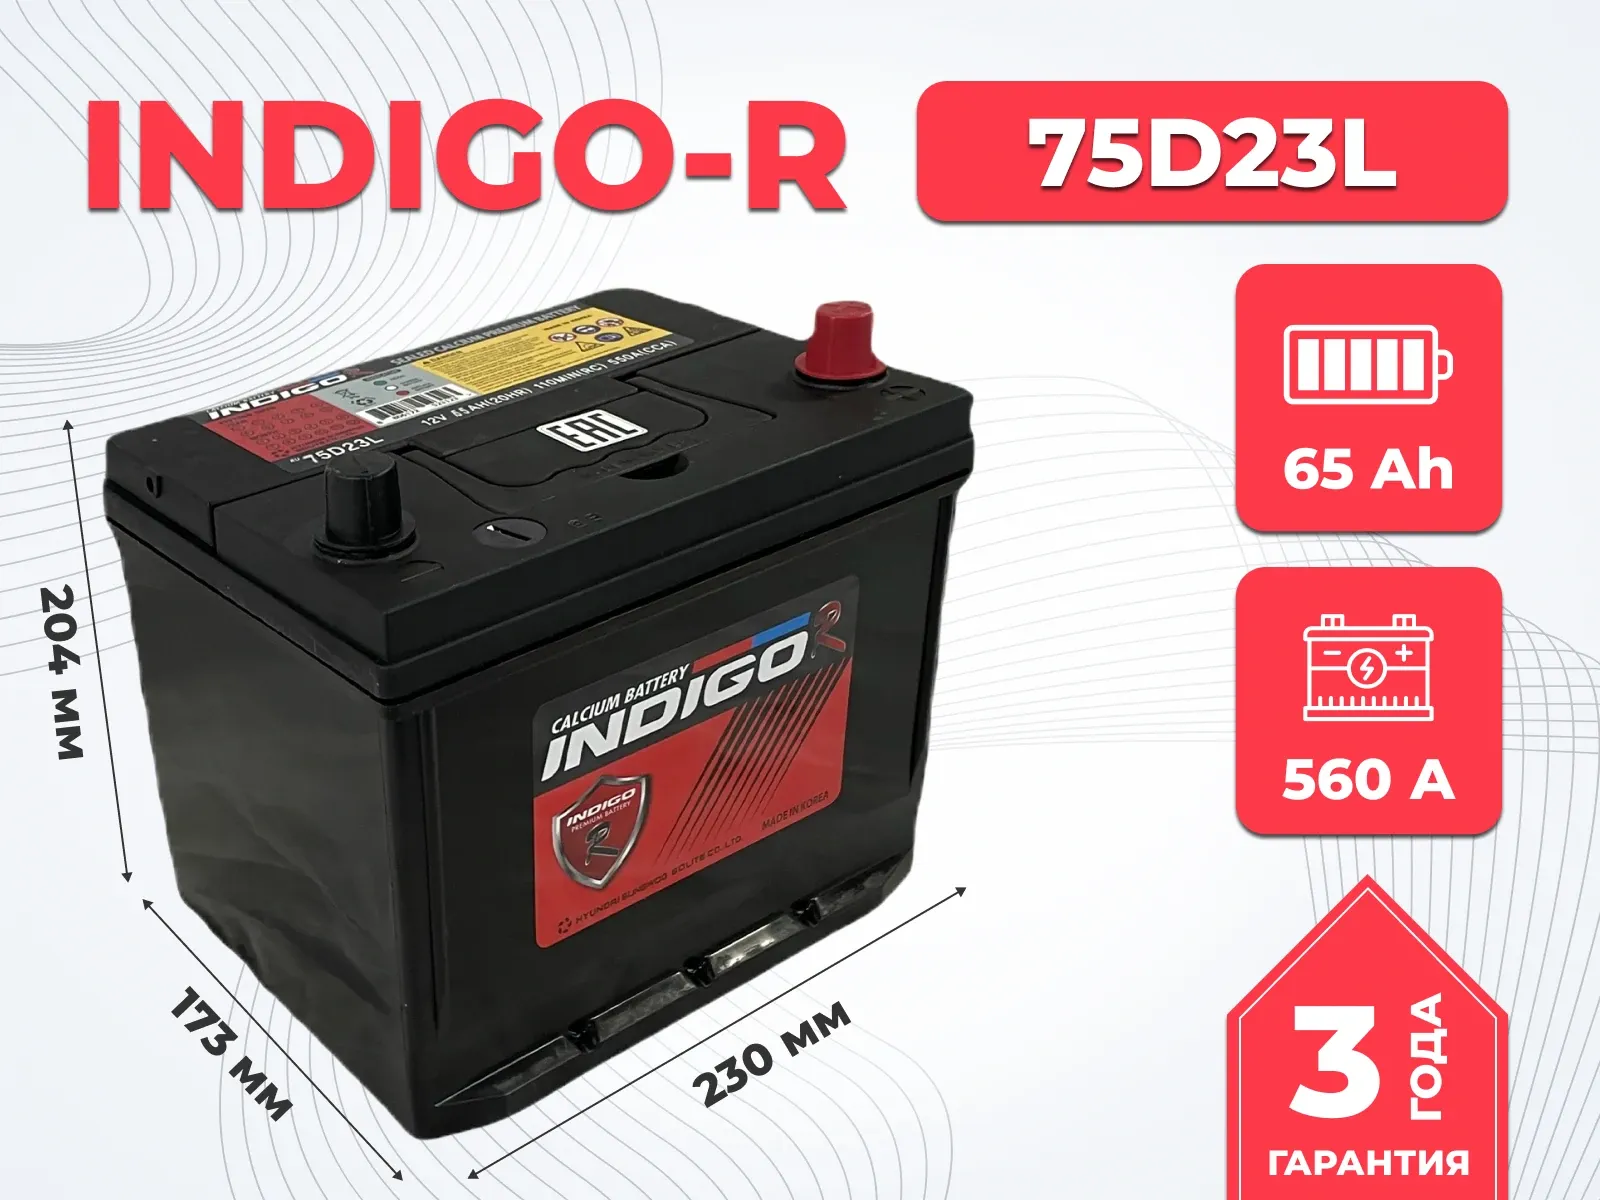 Аккумулятор INDIGO-R 75D23L 65Ah